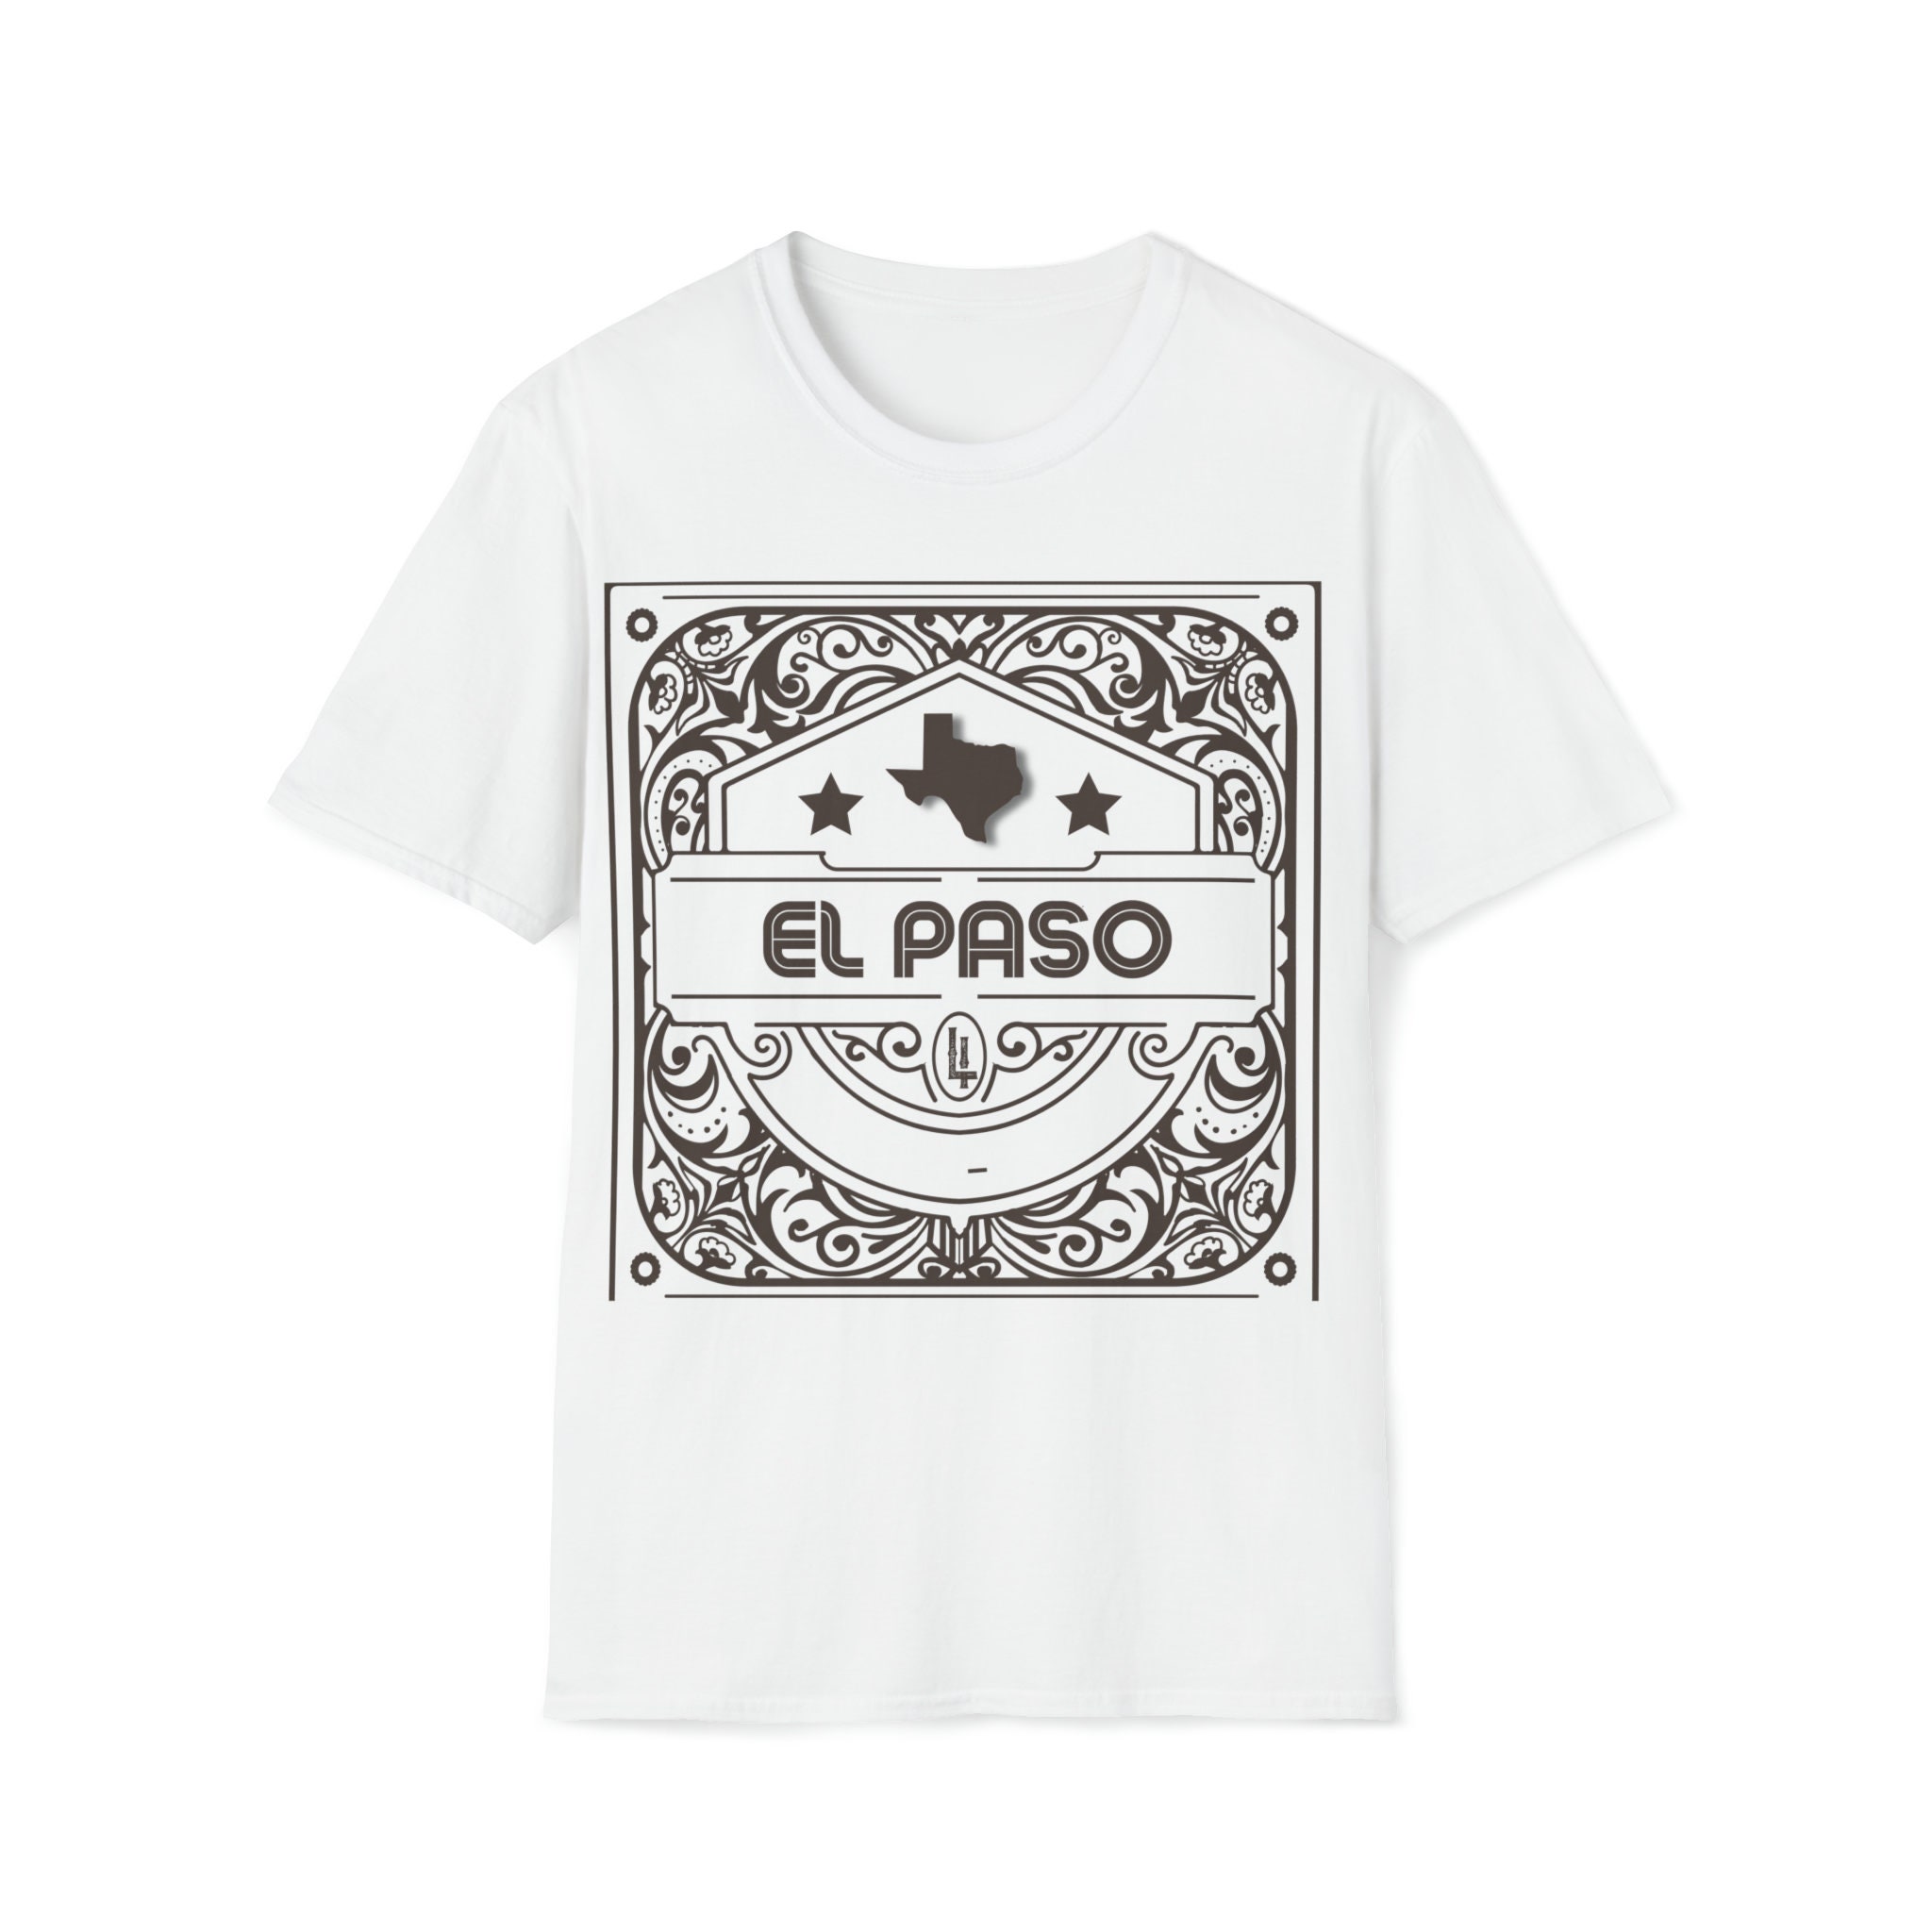 El Paso Strong T Shirt El Paso Fuerte T-Shirt